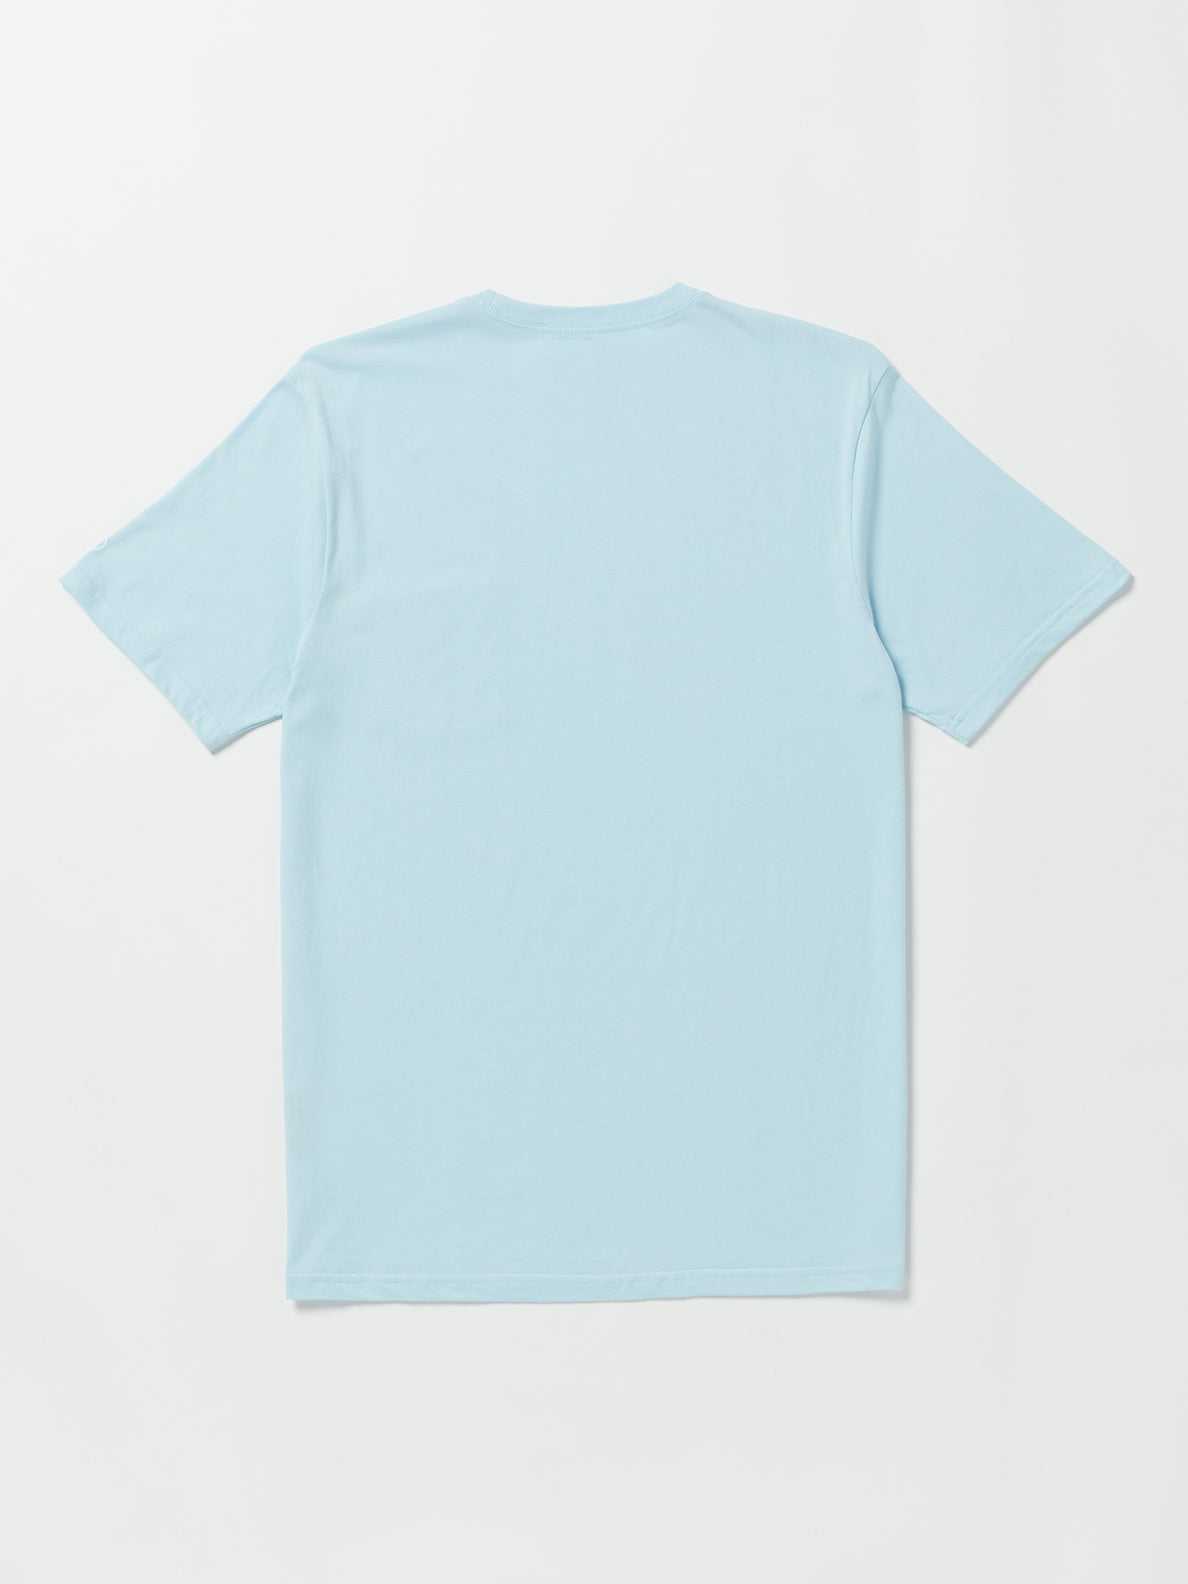 Solid Short Sleeve Pocket Tee - Misty Blue (A5042210_MYB) [B]